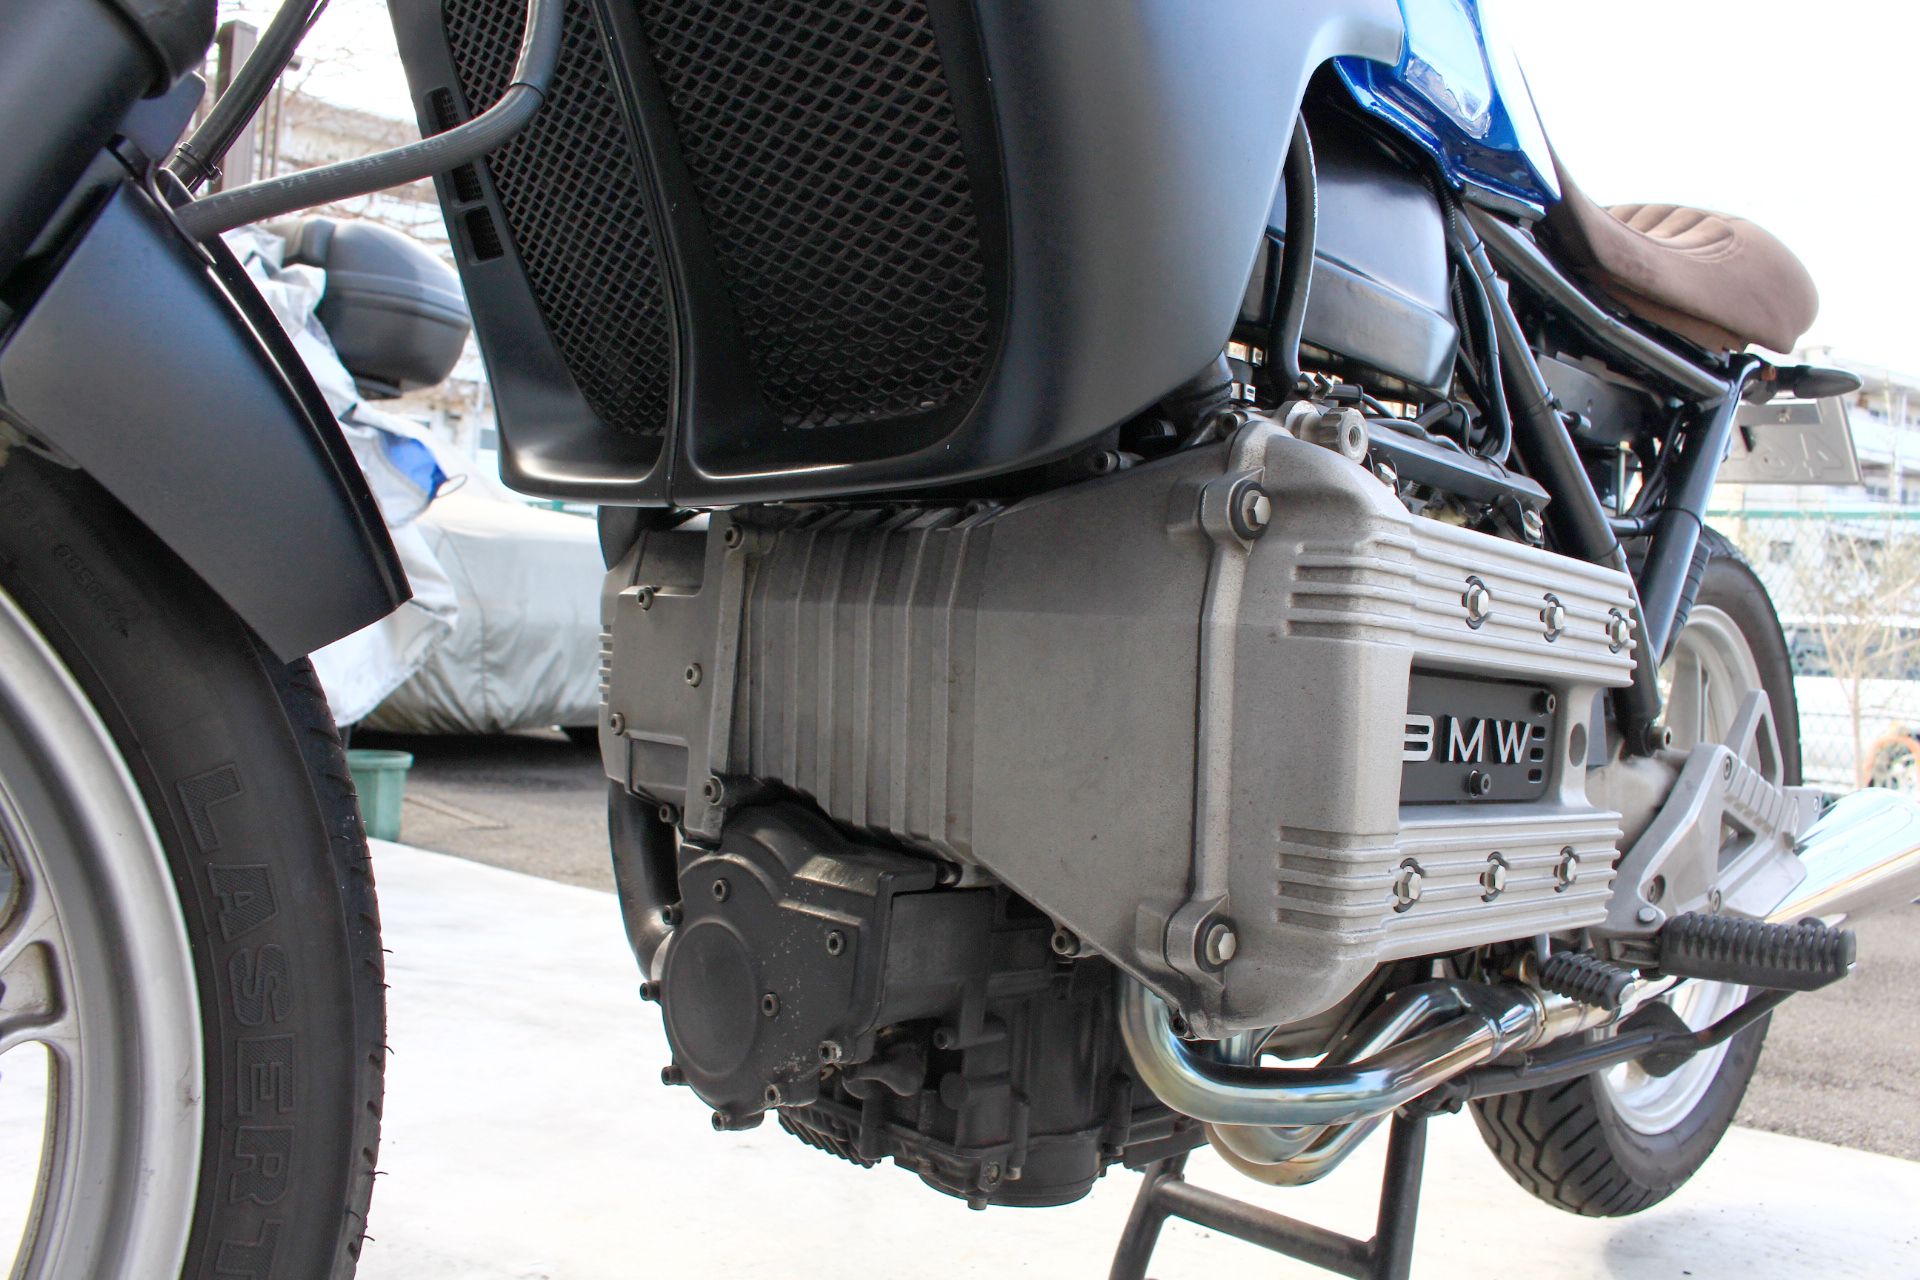 売却済】BMW K75C 中古車両 カフェカスタム 試乗可能 | outLoud motorcycle BMW R100